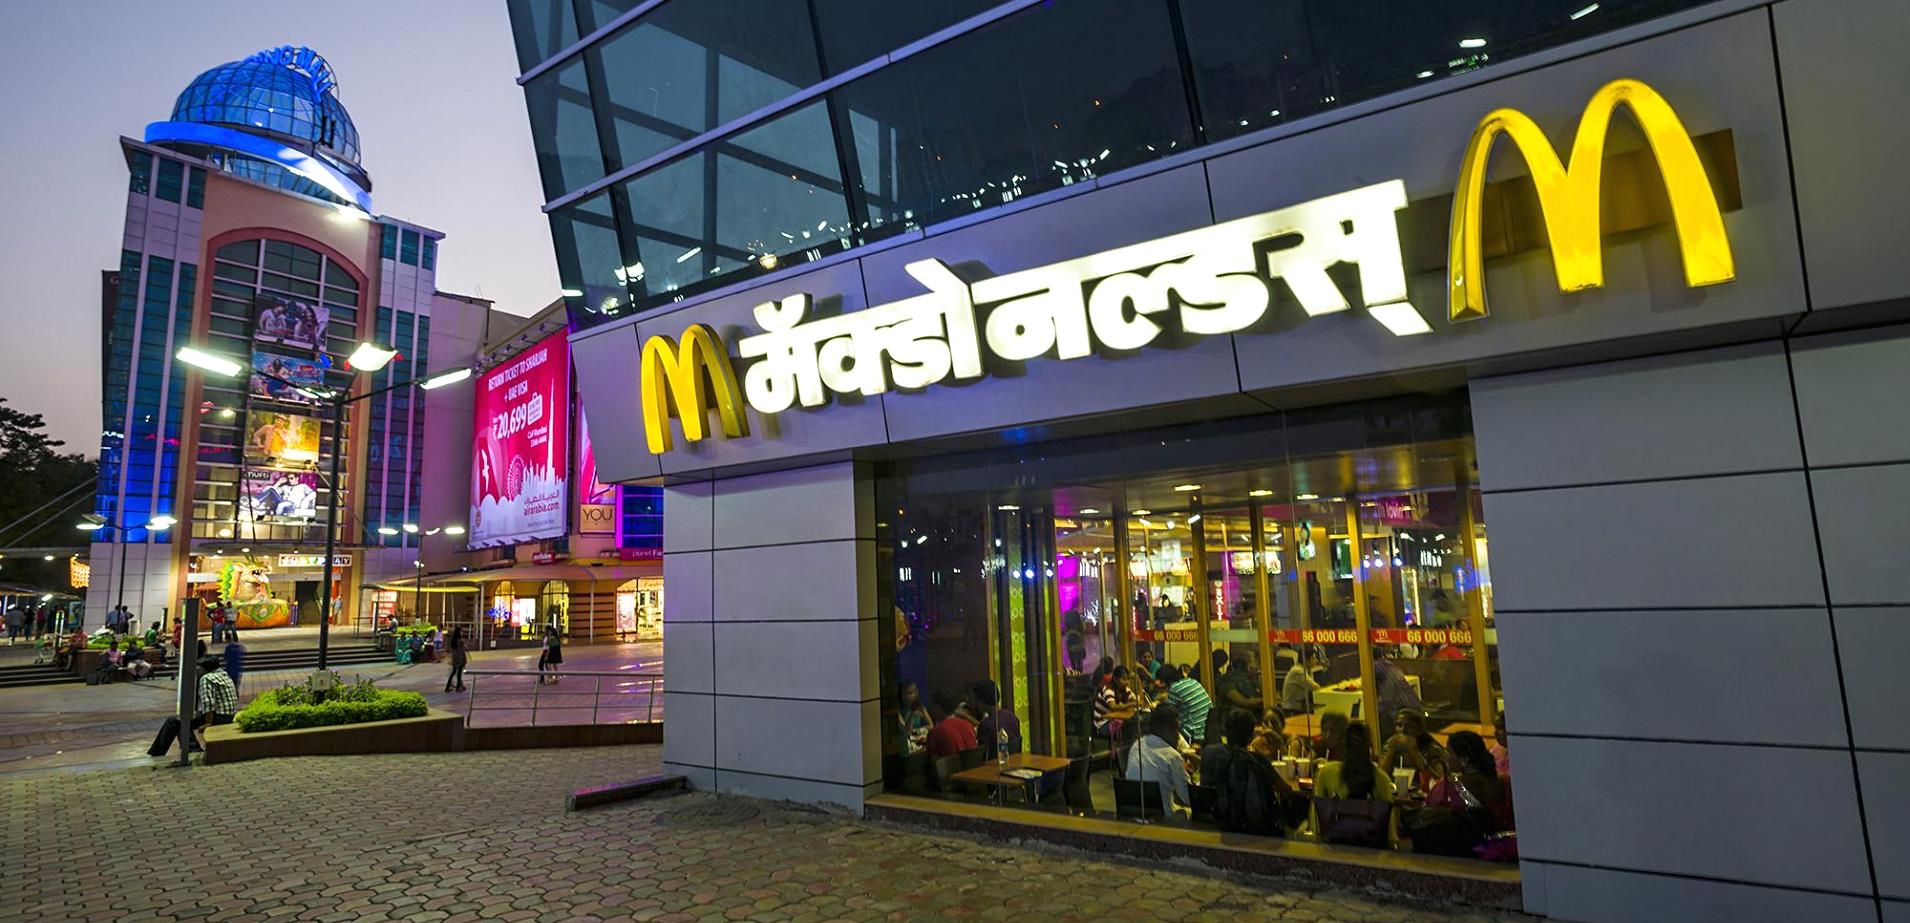 McDonalds i Indien, joint venture